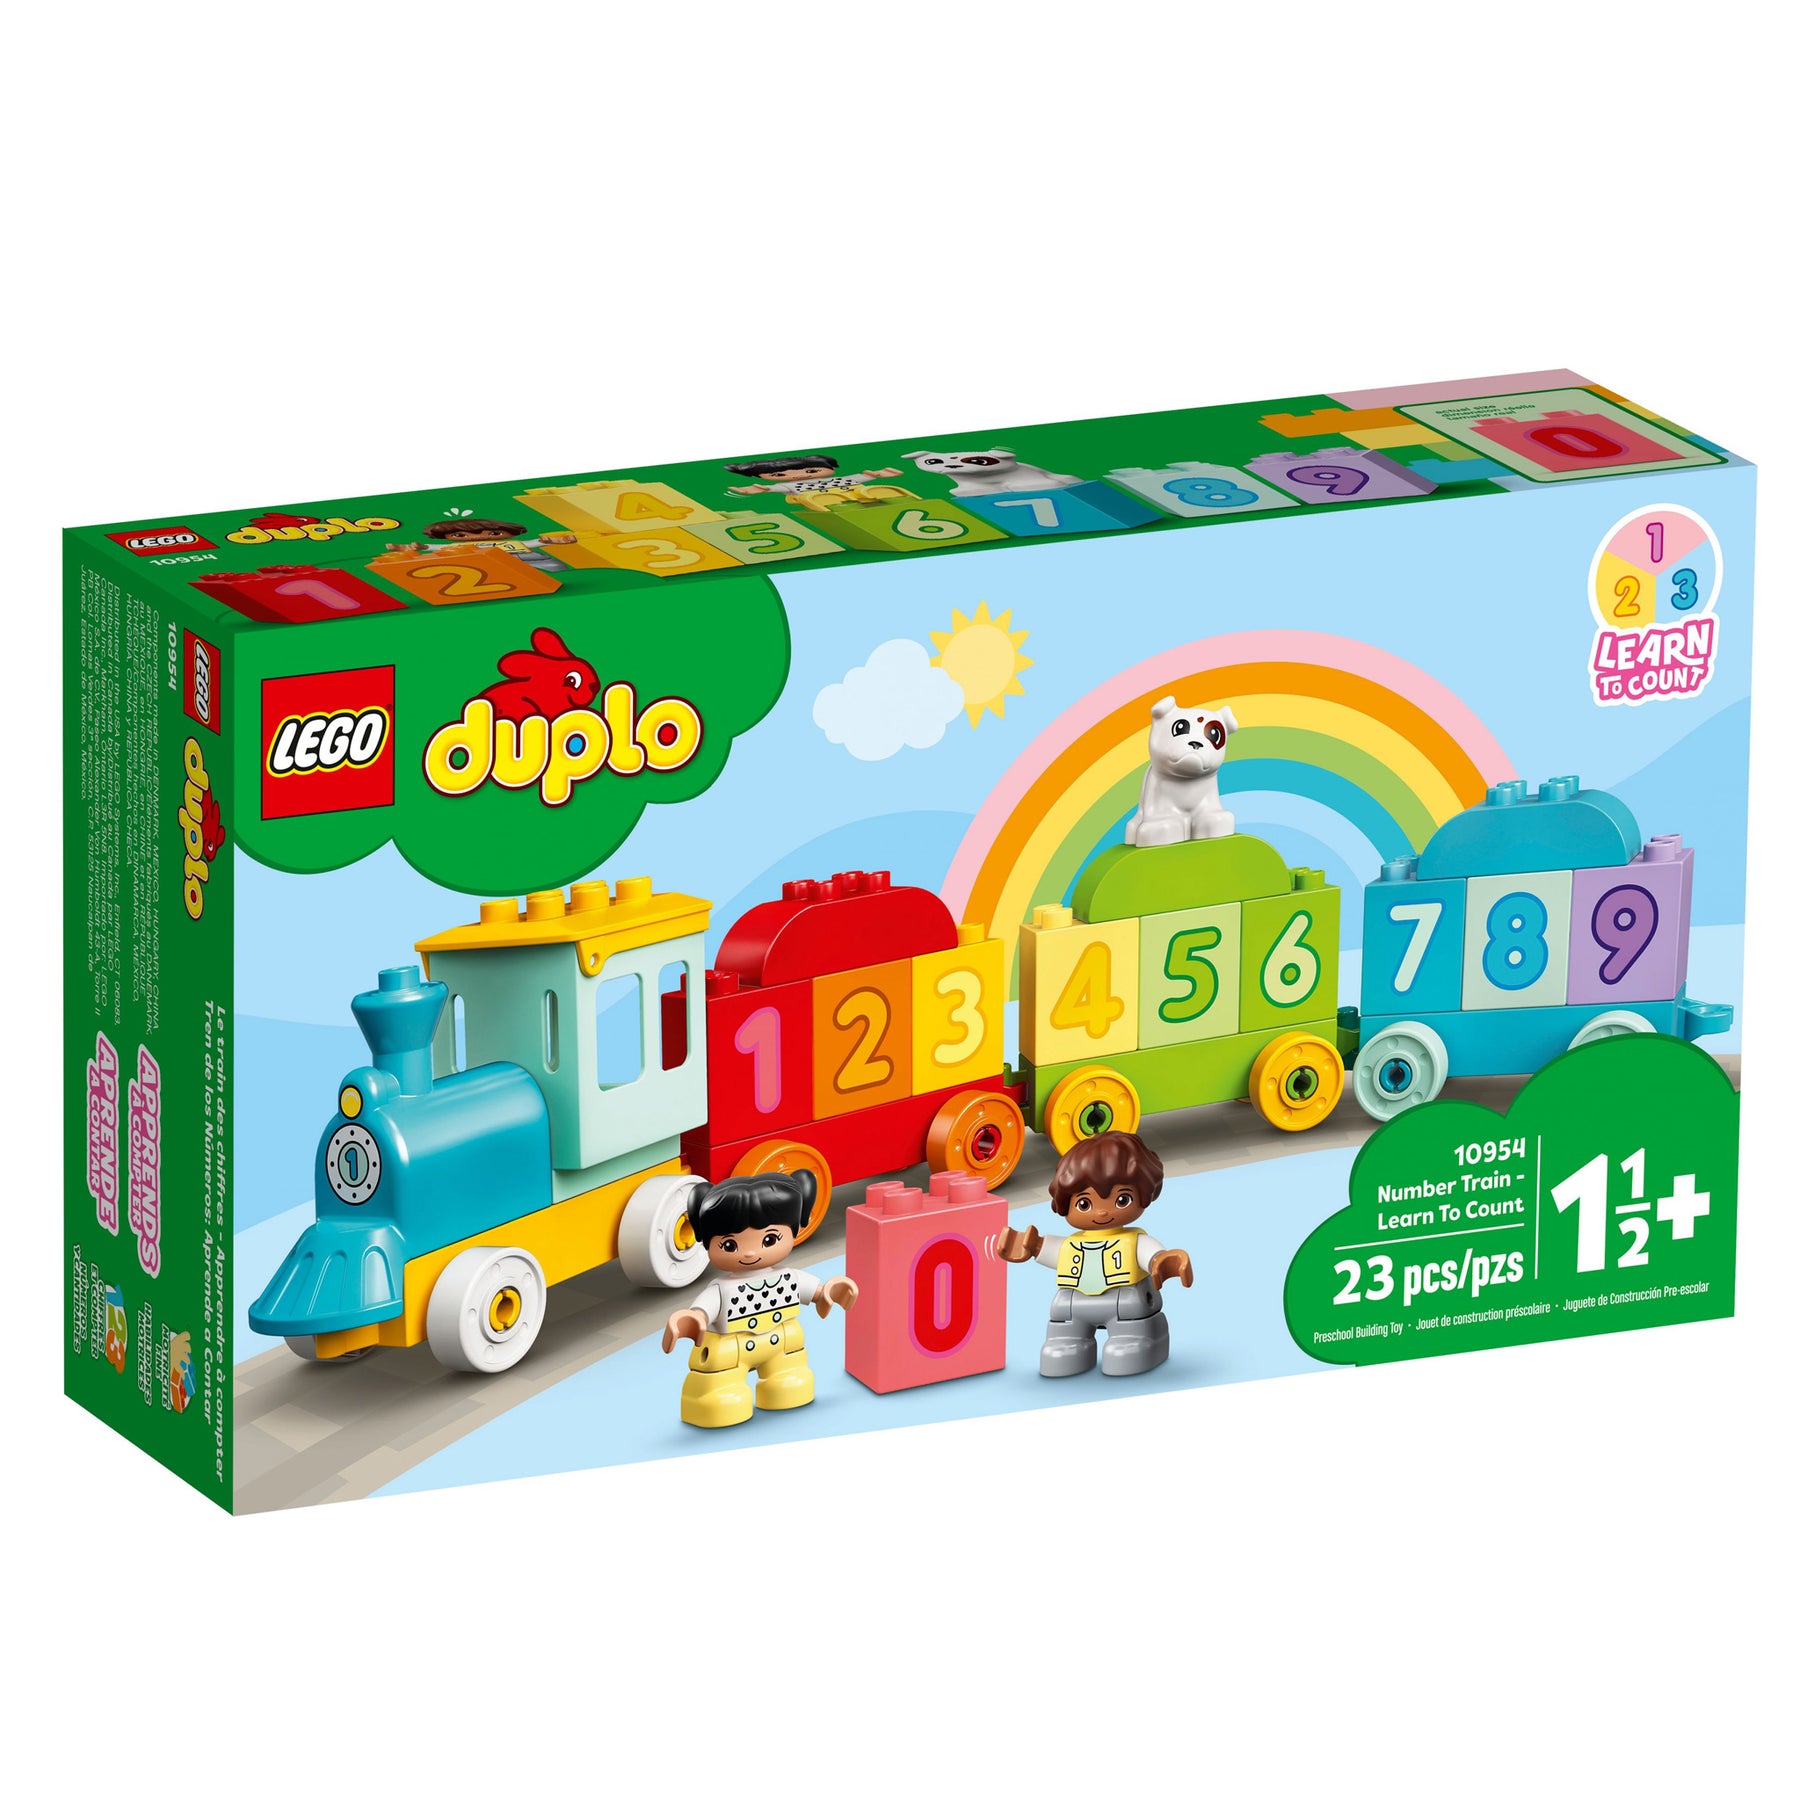 10954-Lego Duplo Zahlenzug-Lego